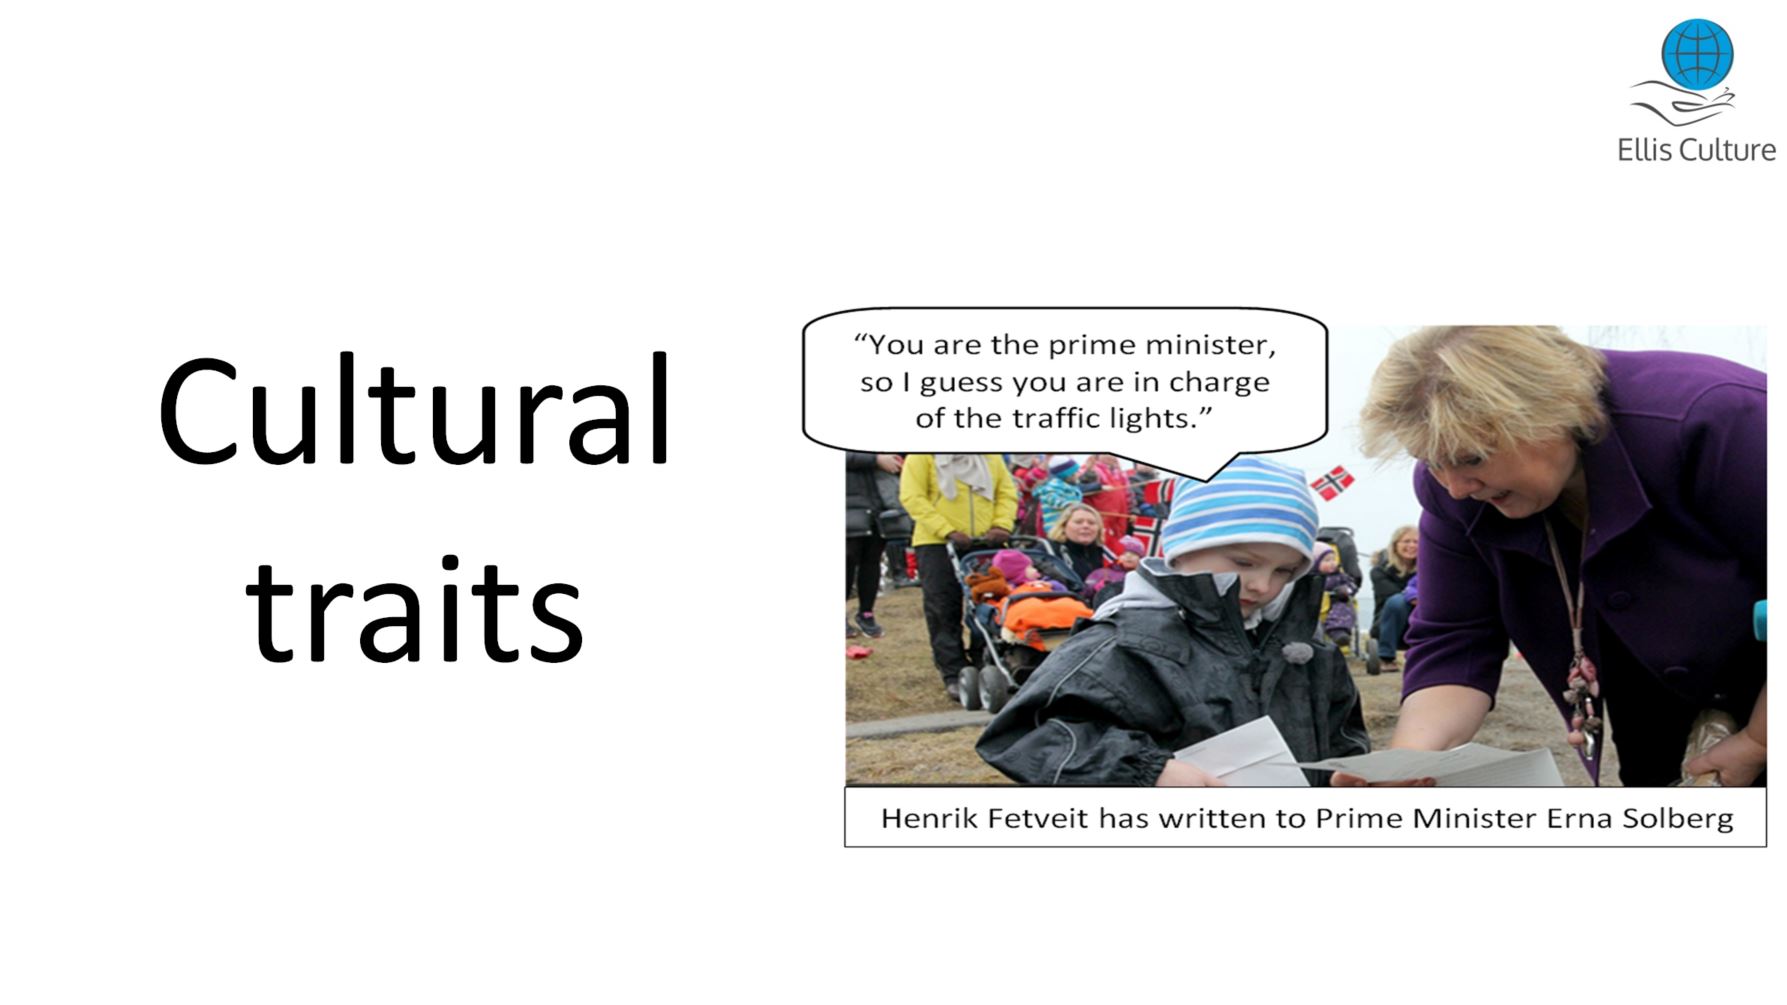 Cultural traits